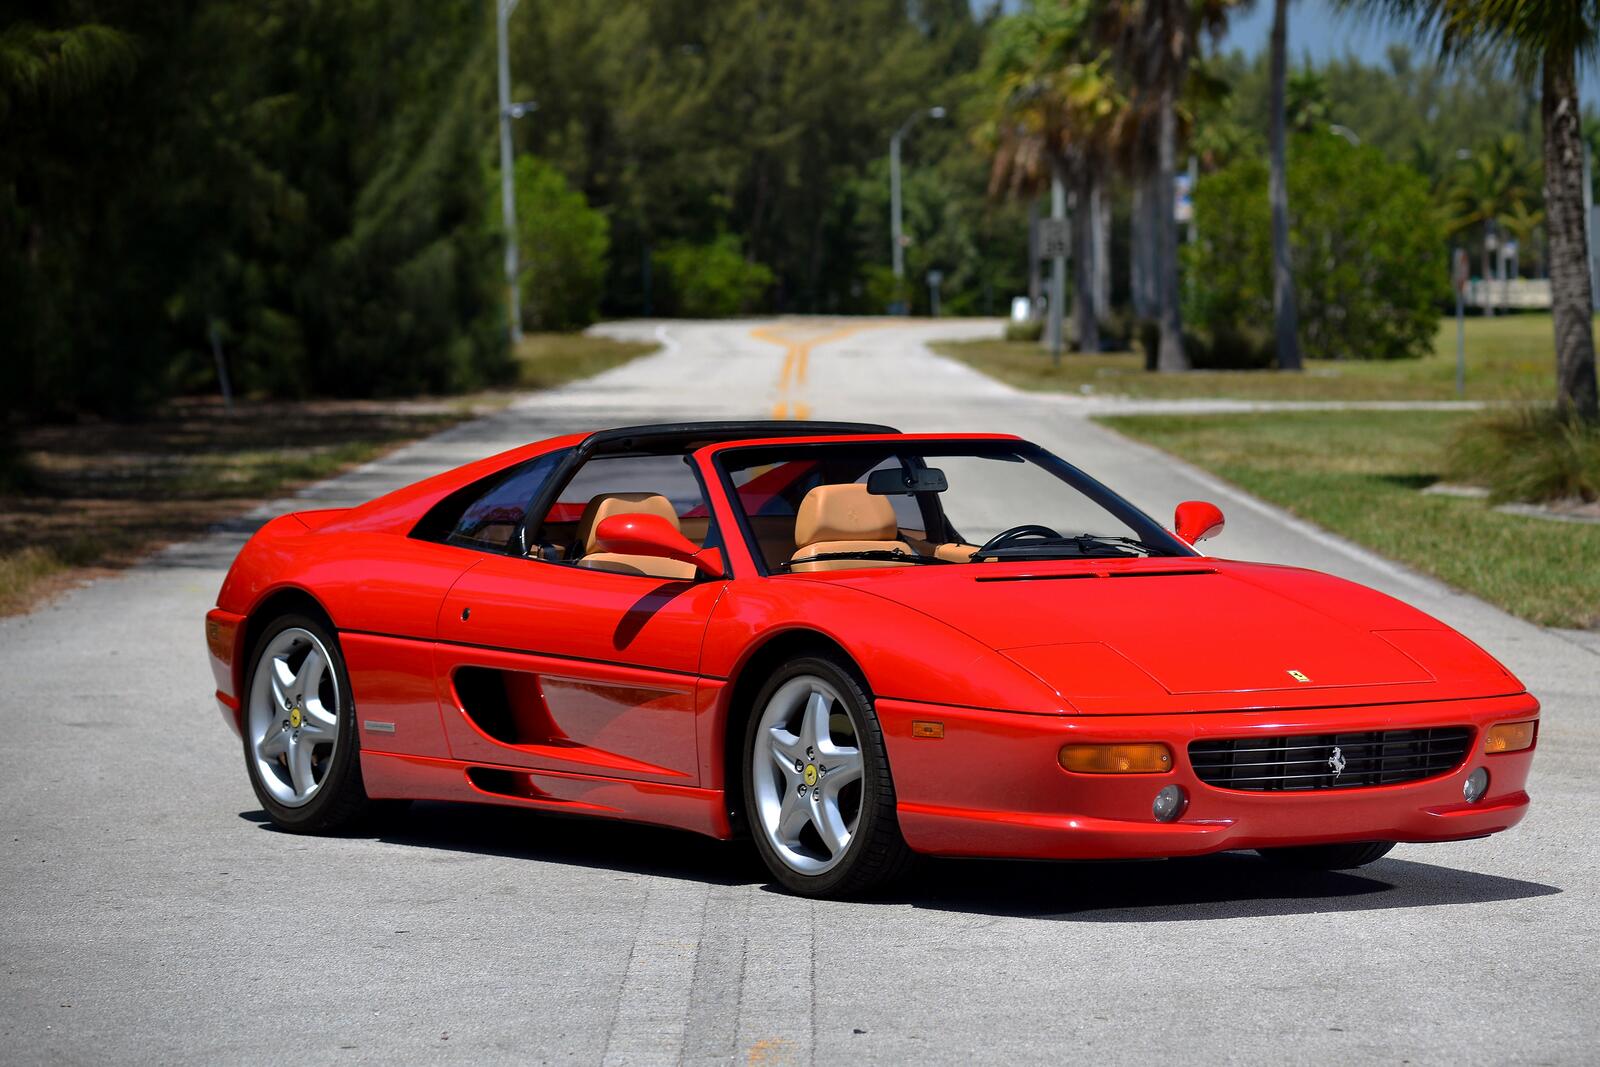 Бесплатное фото Ferrari gts f355 convertible в красном цвете